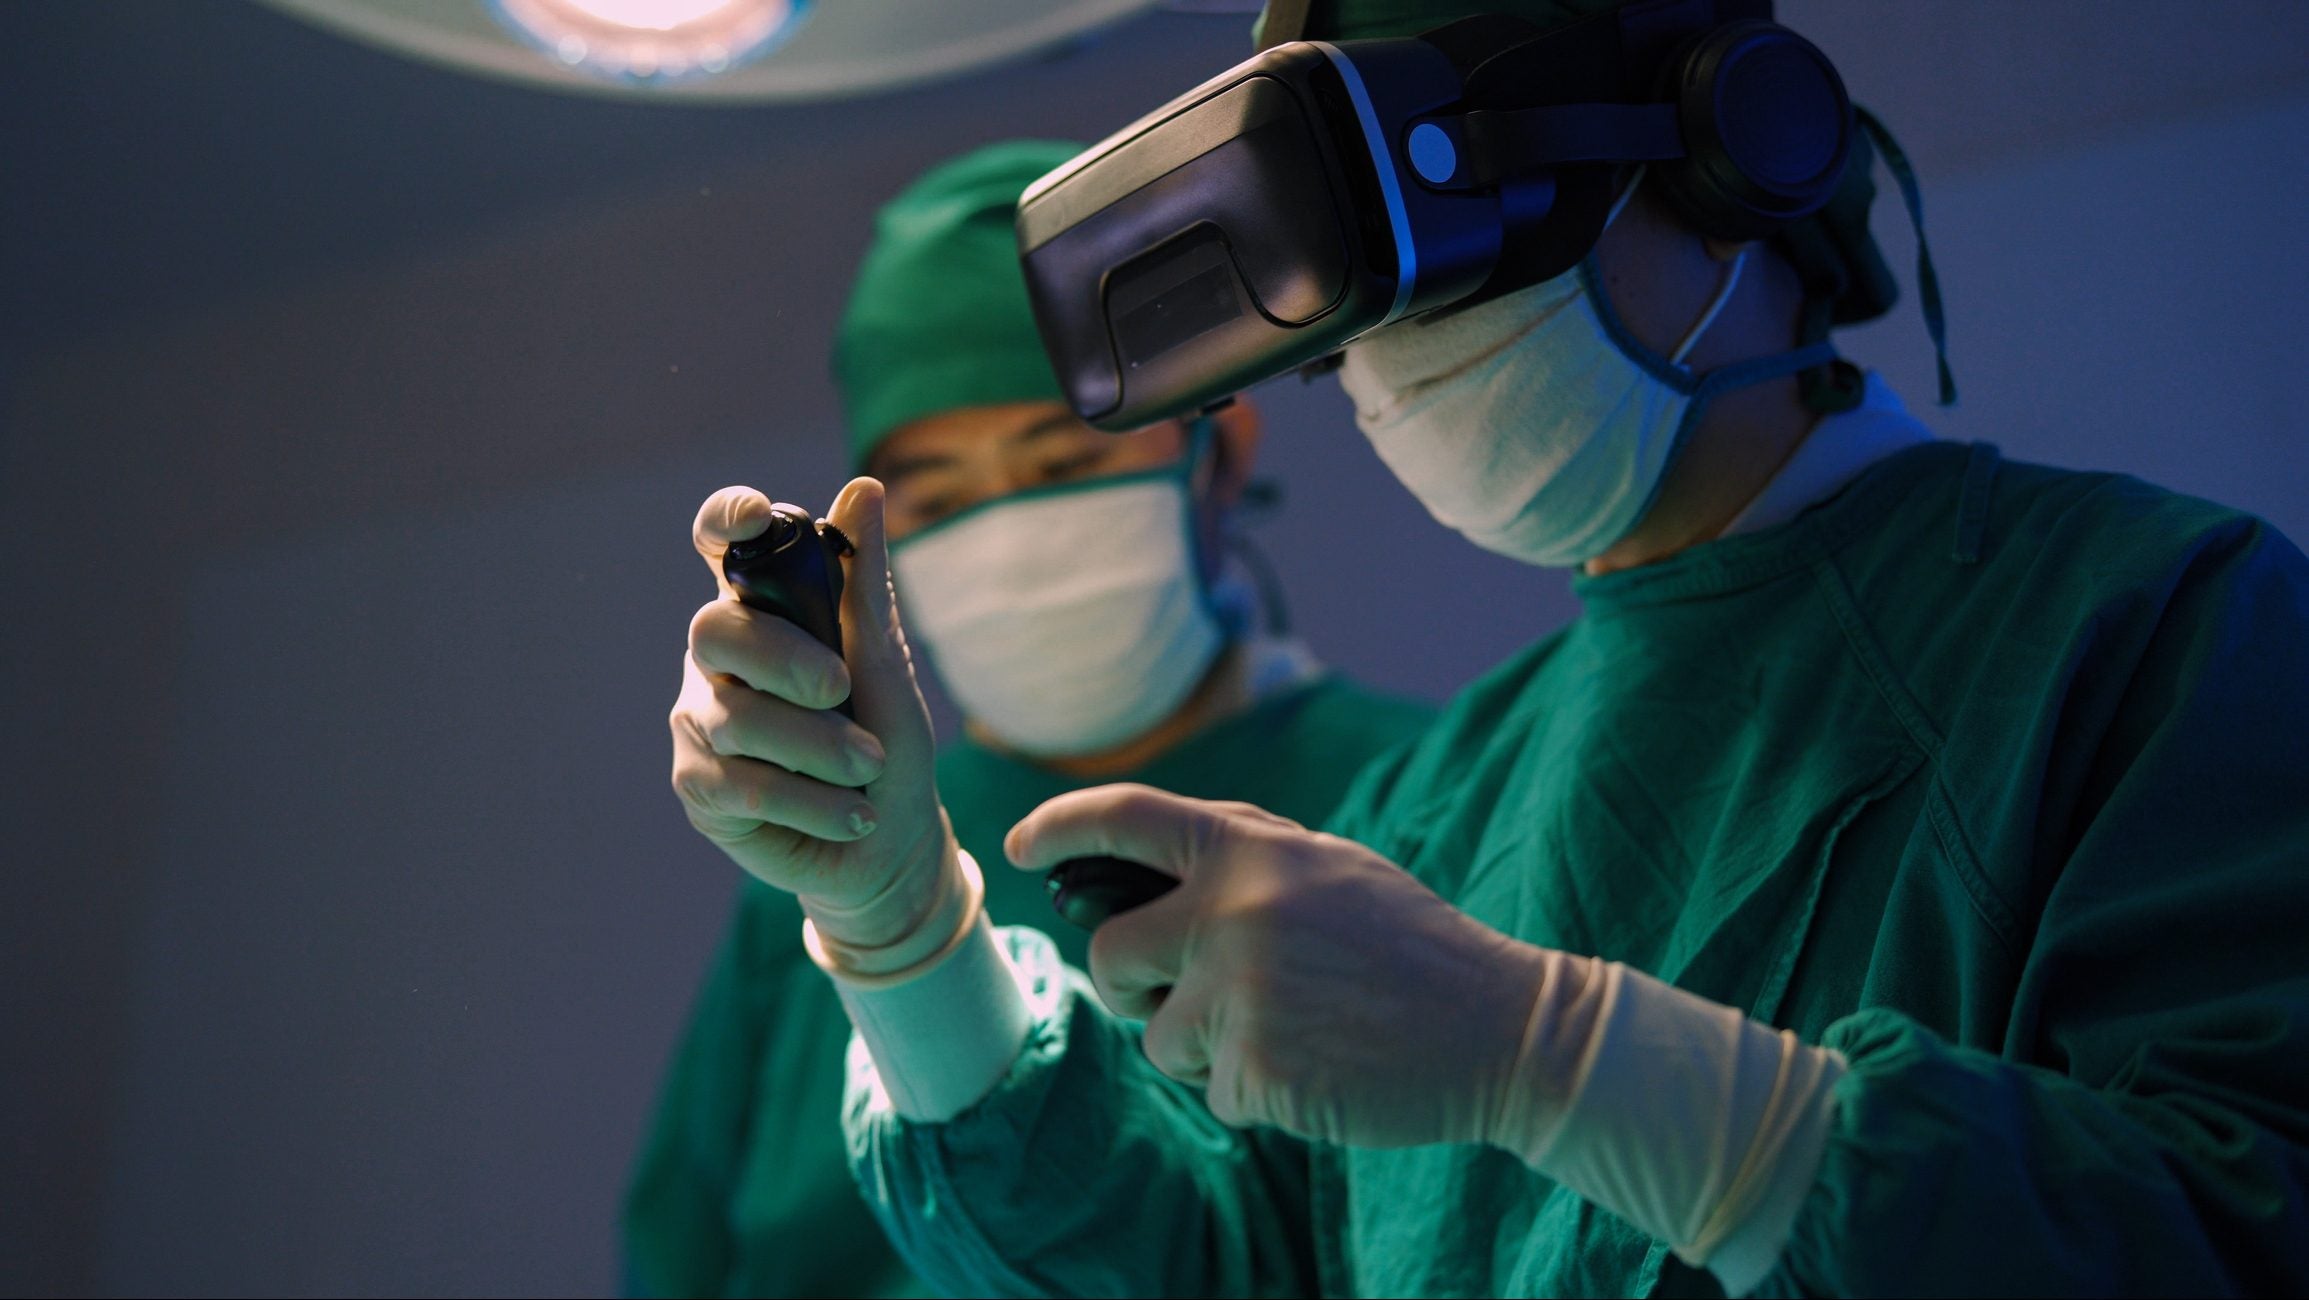 Η πρώτη παιδιατρική χειρουργική επέμβαση που πραγματοποιήθηκε χρησιμοποιώντας ακουστικά εικονικής πραγματικότητας VisAR